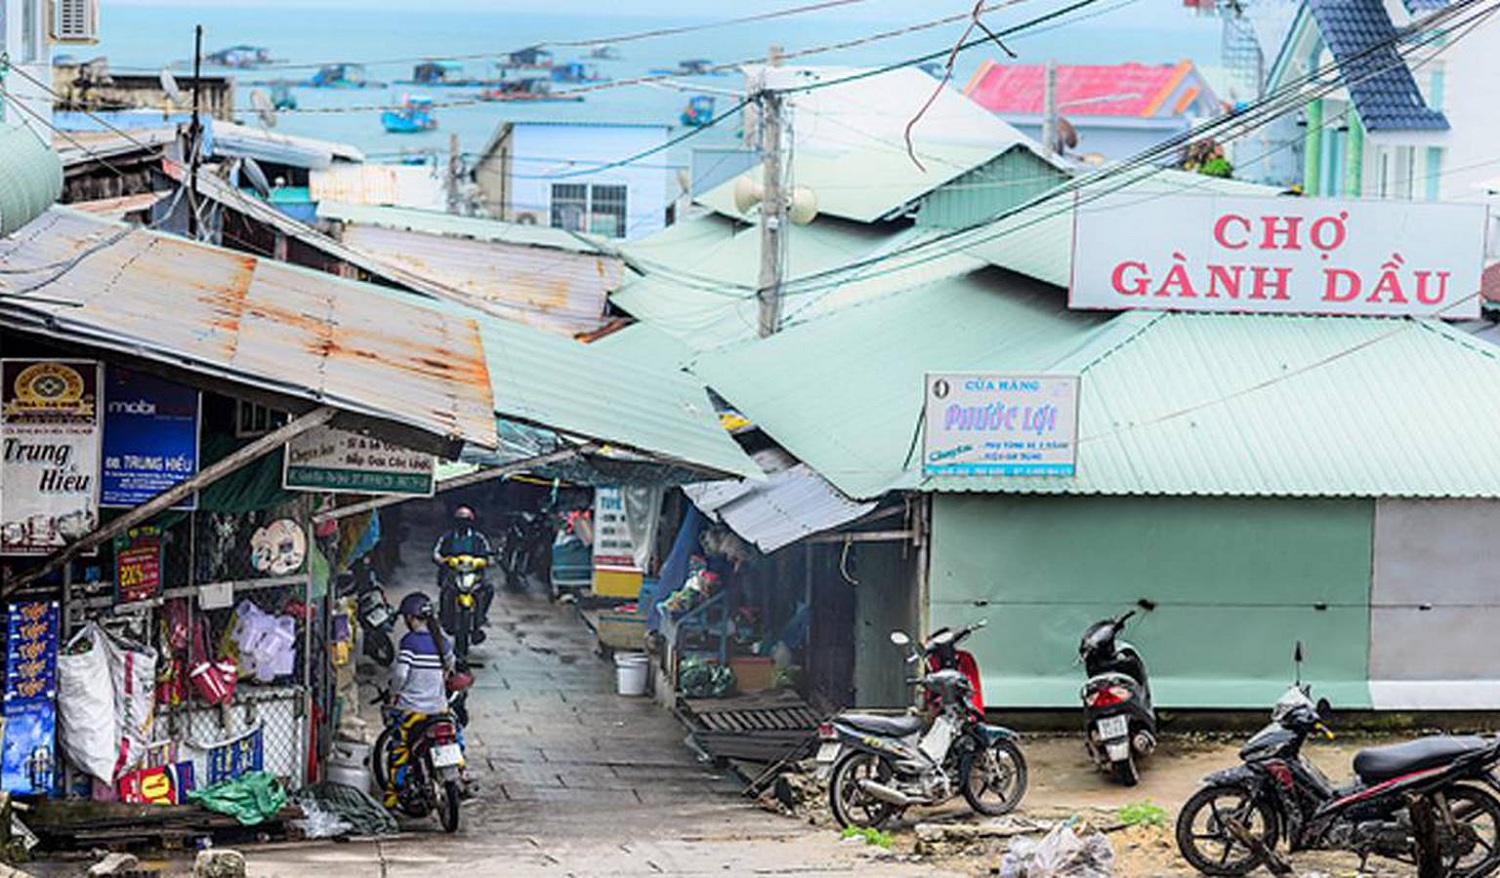 Chợ Gành Dầu Phú Quốc – Chợ quê yên bình trên Bắc đảo 2